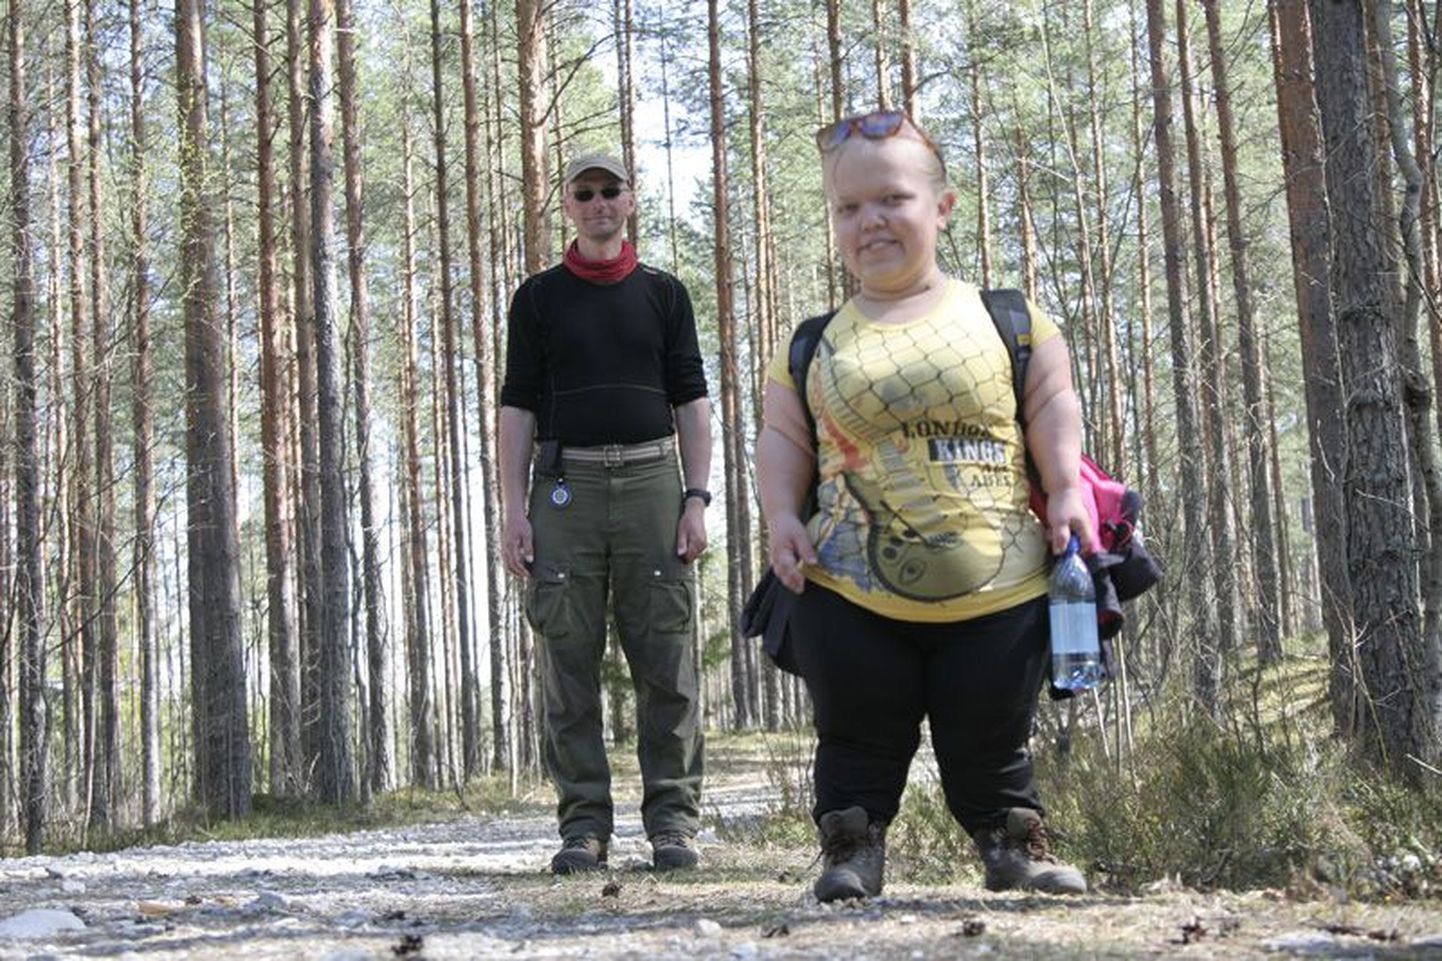 Saatesarja toimetaja, Filmimees OÜ peatoimetaja Raimo Kummer koos 110 cm pikkuse Helin Valsiga, kes nakatas teisi oma heatujulisusega.